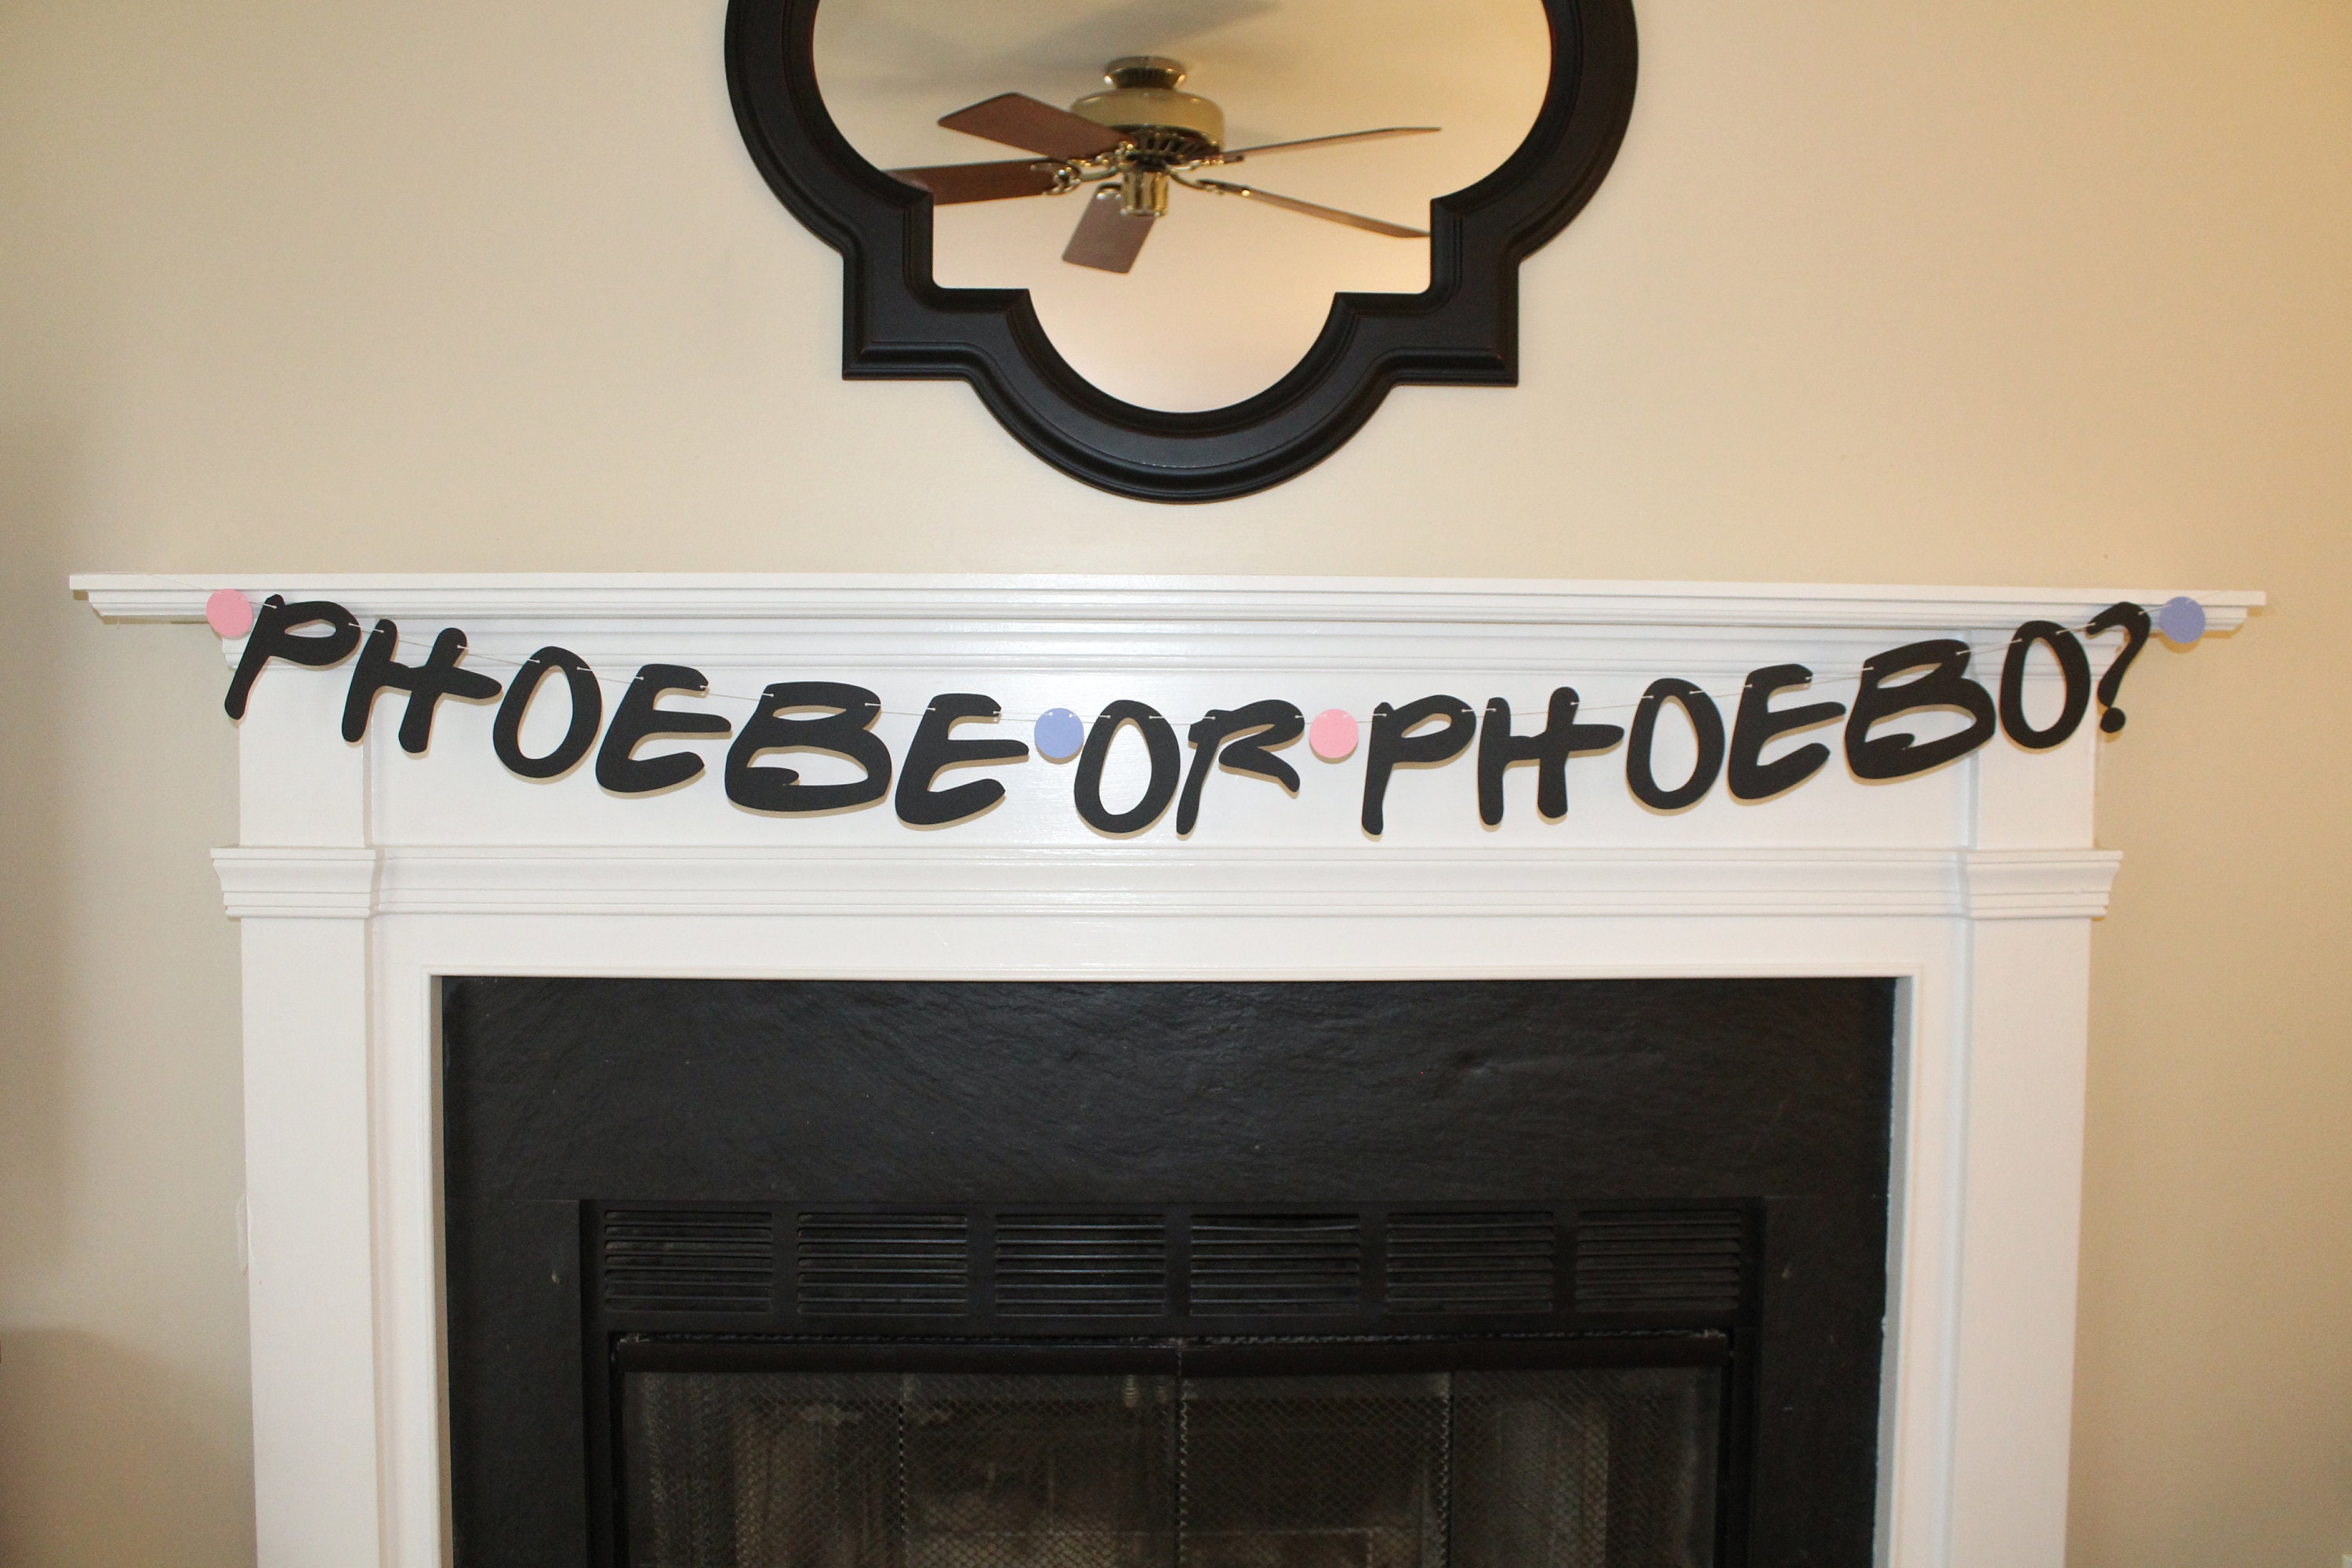 Phoebe or phoebo